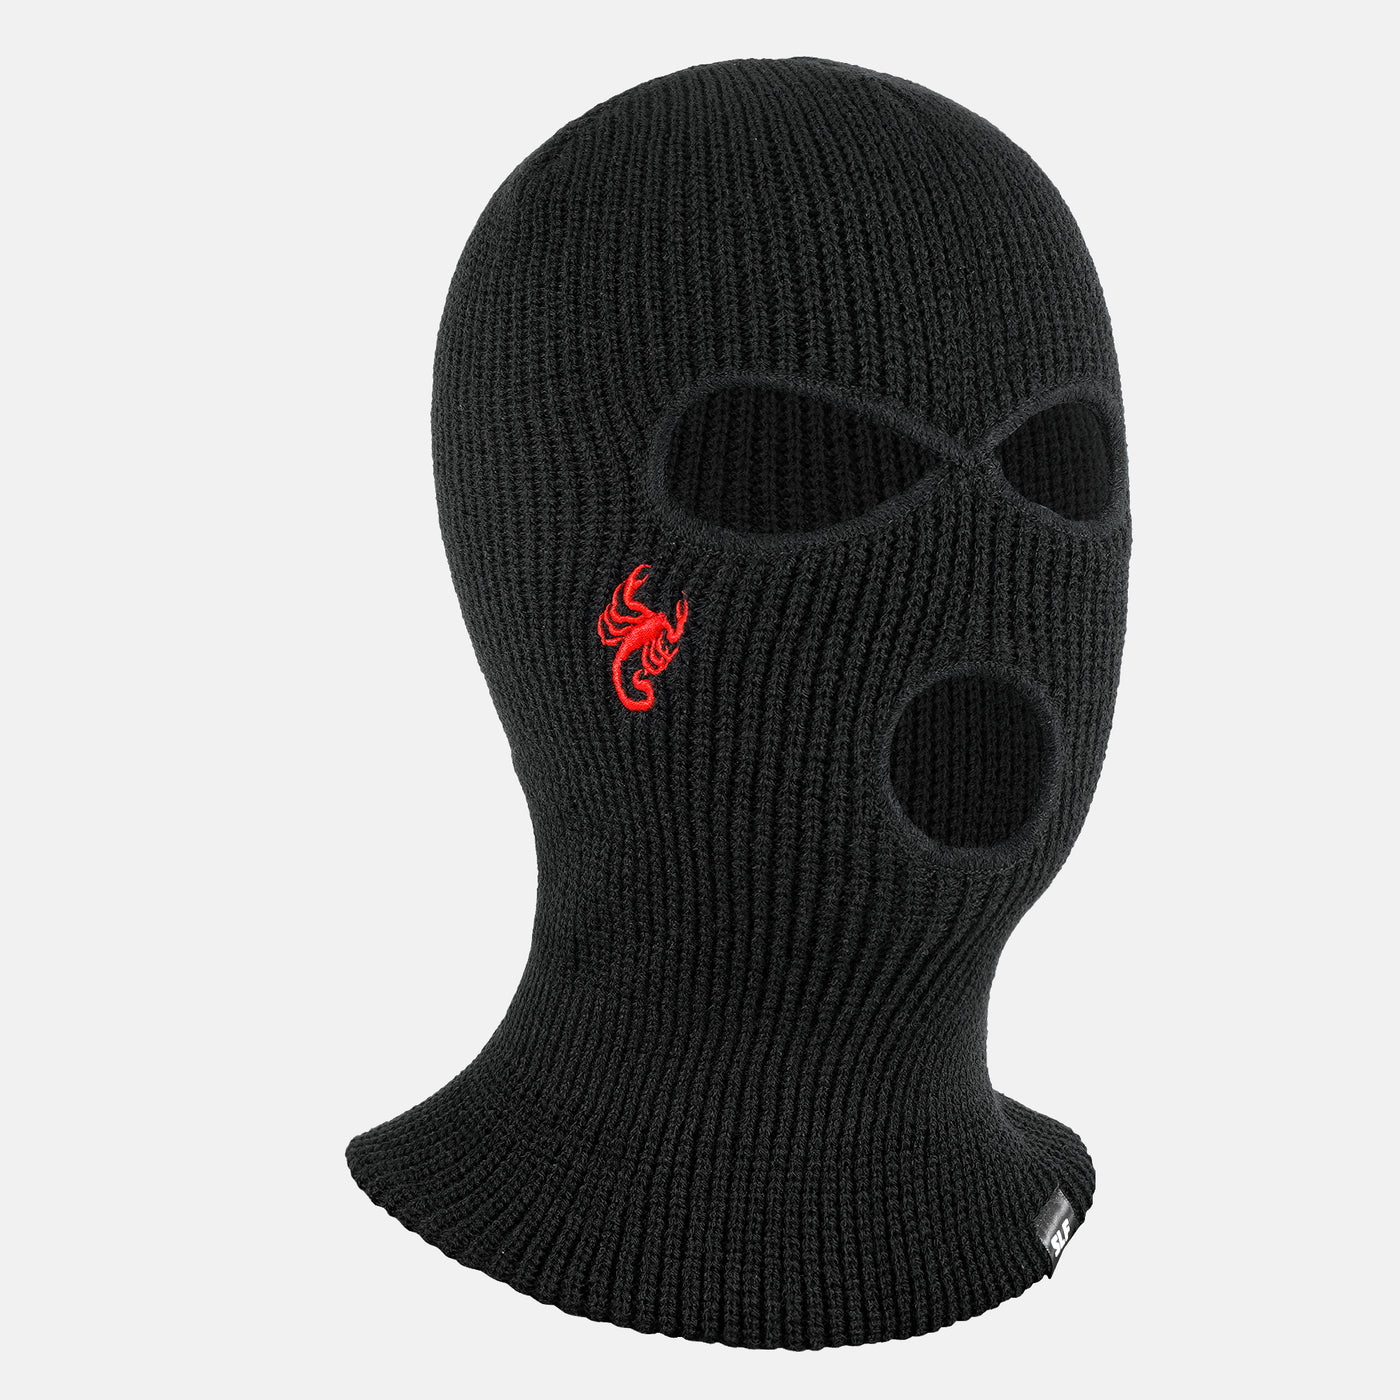 Scorpion Ski Mask